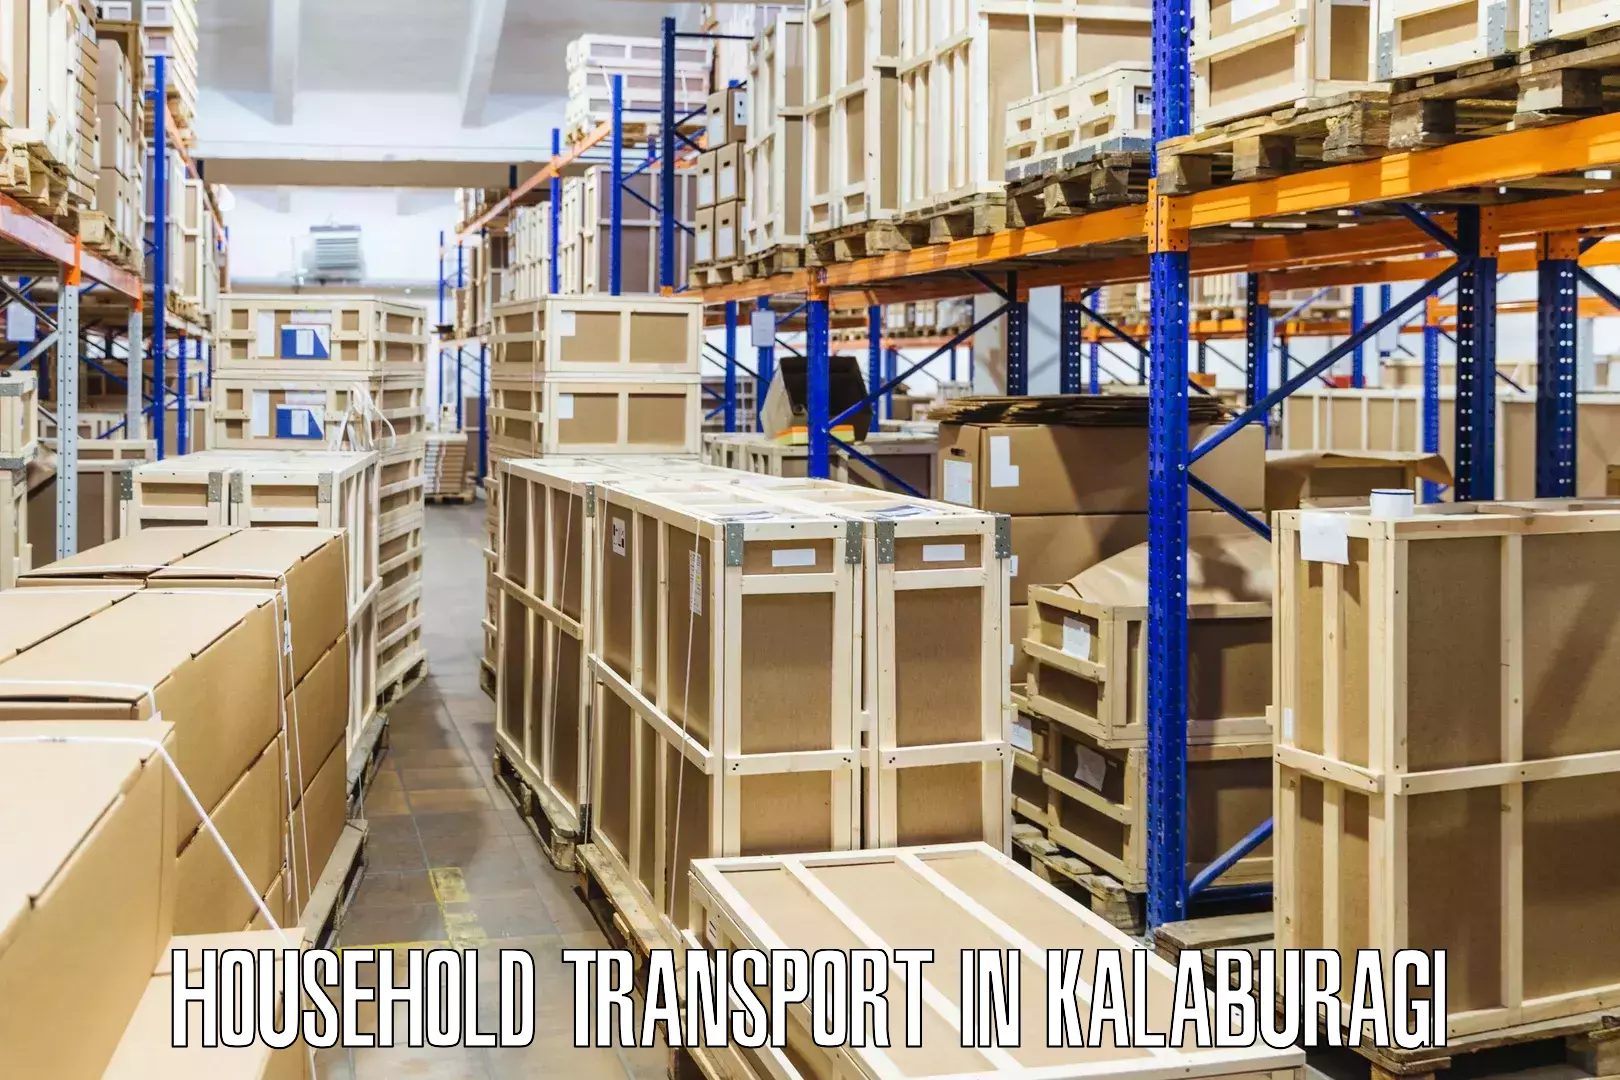 Furniture handling services in Kalaburagi